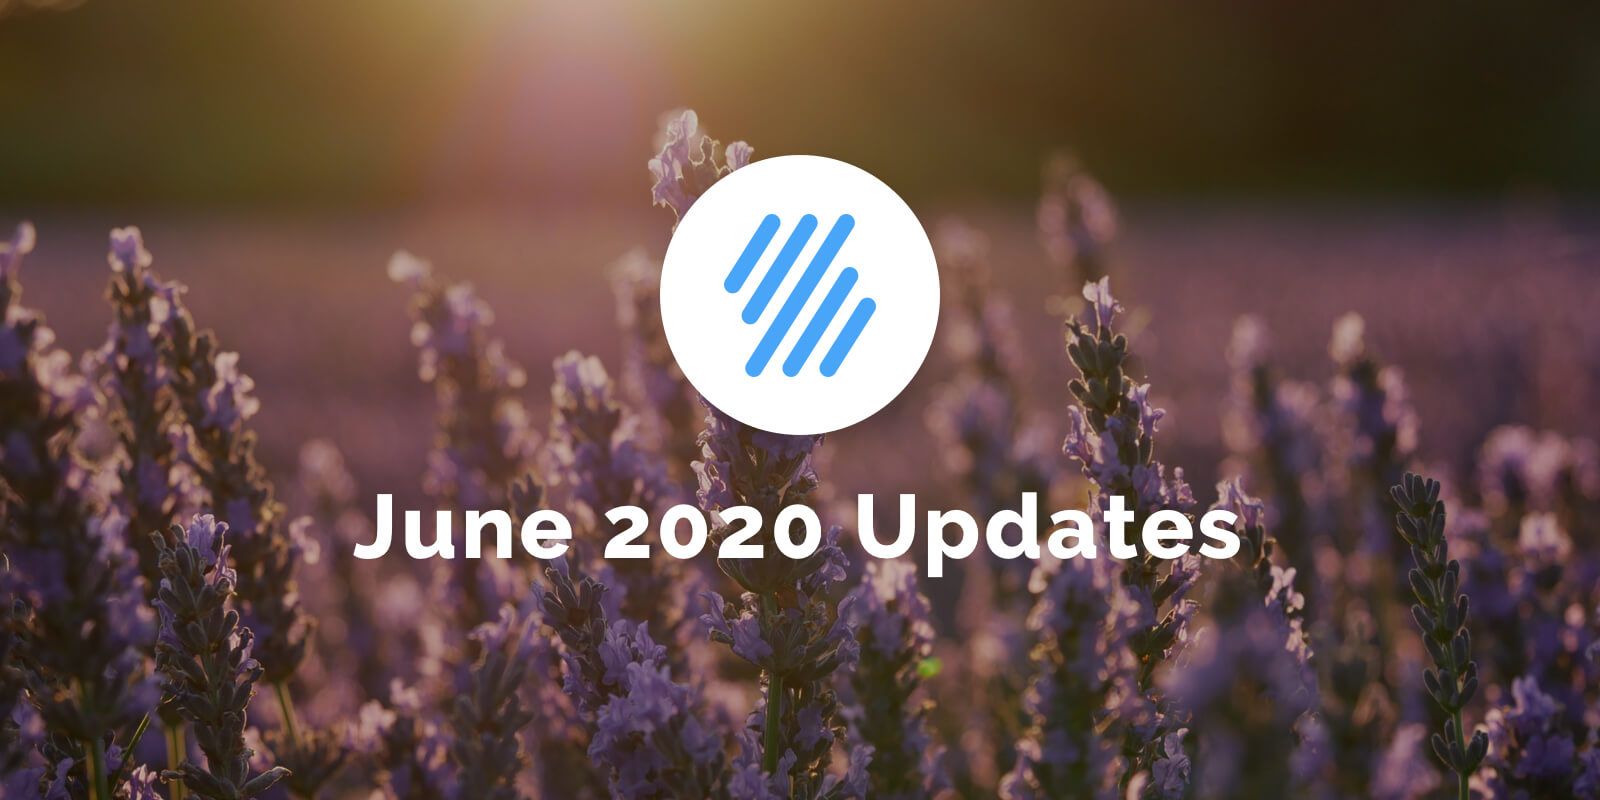 June 2020 Updates